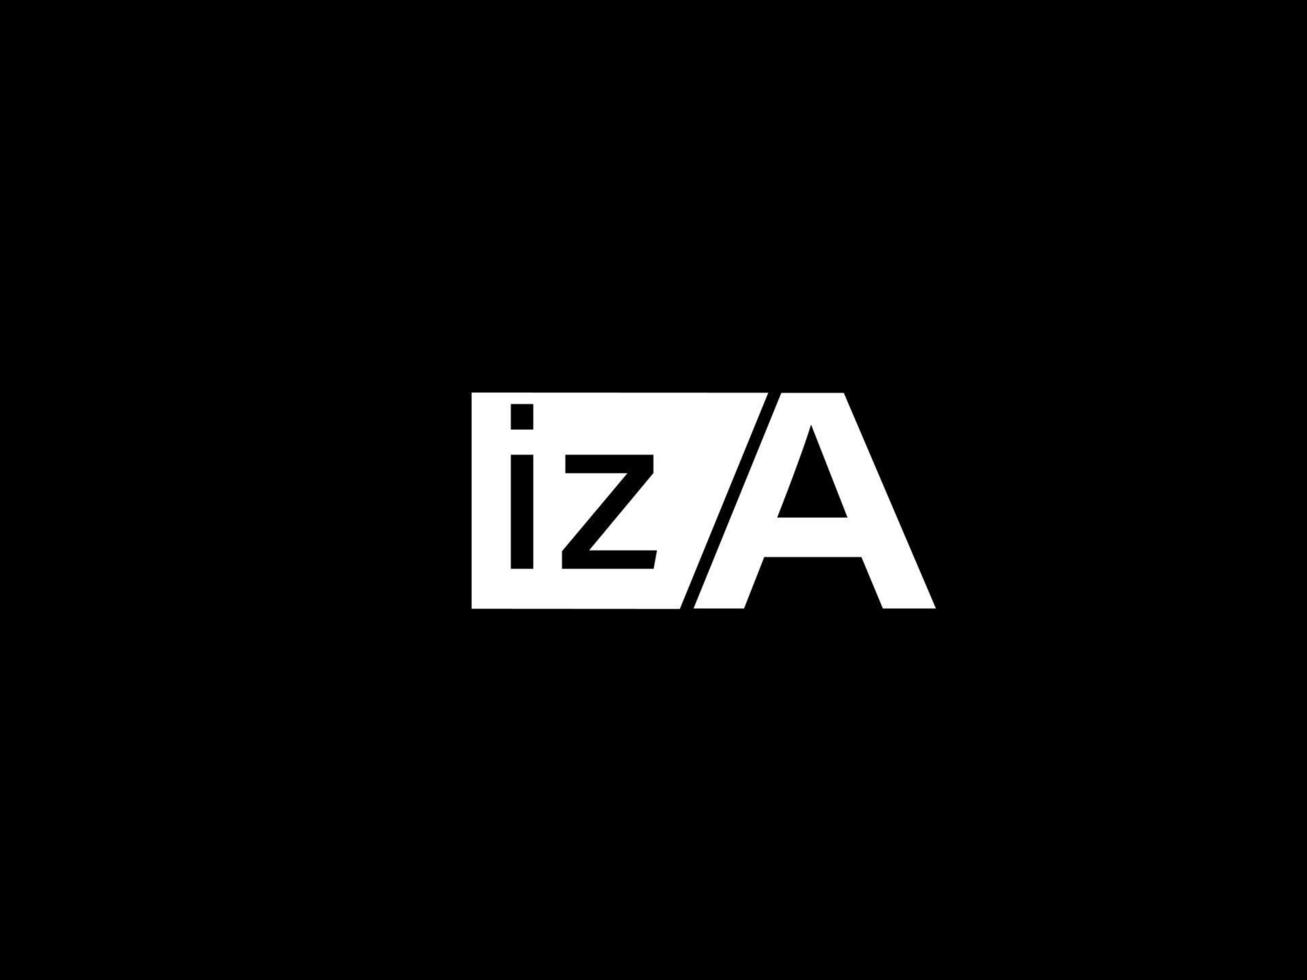 iza-Logo und Grafikdesign Vektorgrafiken, Symbole isoliert auf schwarzem Hintergrund vektor